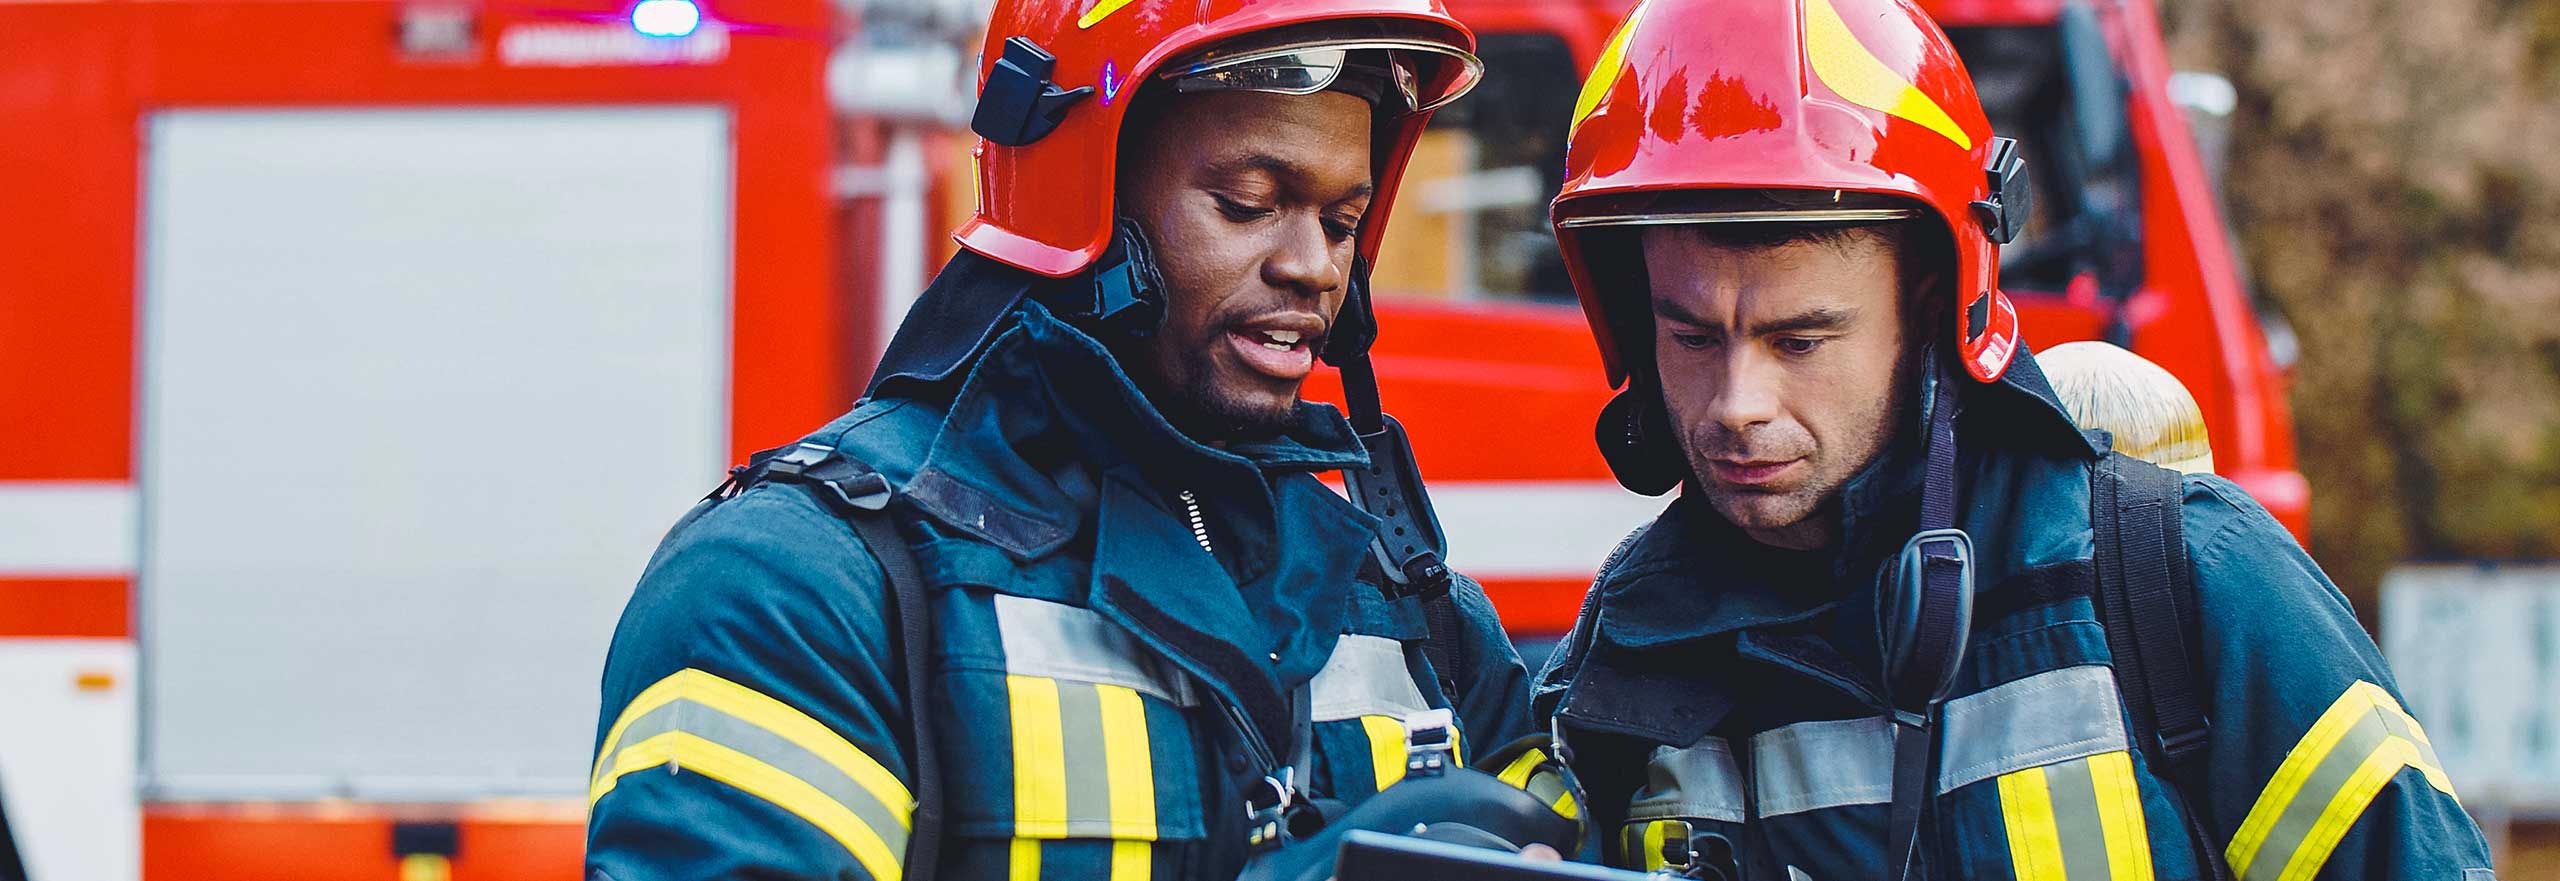 Retrato de dos bomberos en una operación de extinción de incendios, bomberos con ropa de protección y casco utilizando una tableta.